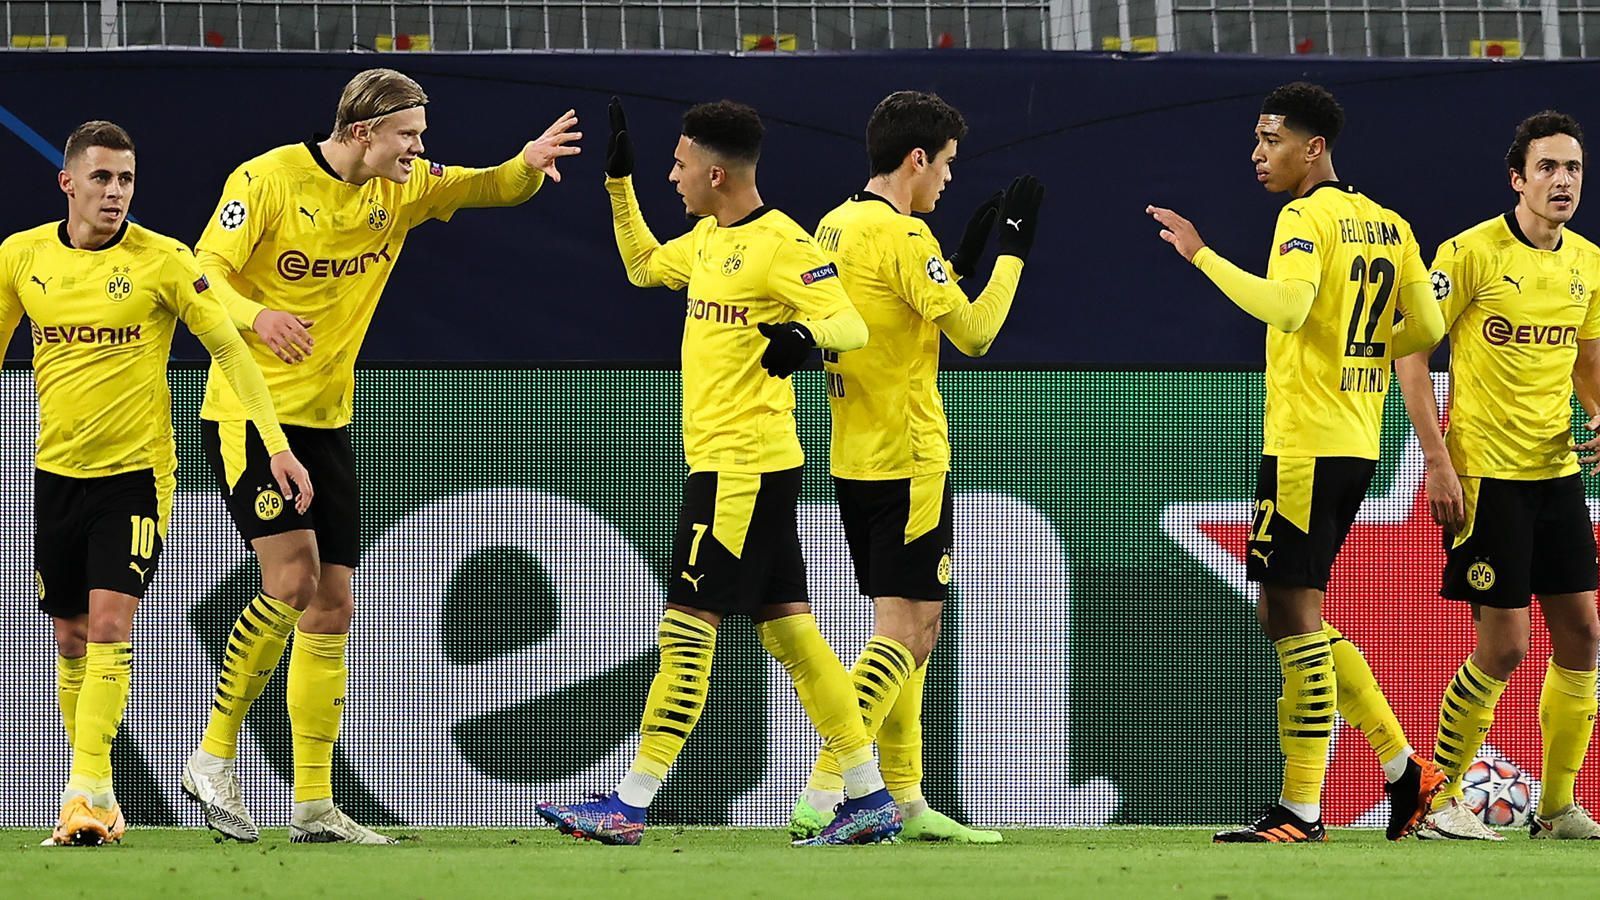 
                <strong>3:0 gegen Brügge: So gut spielten die Stars von Borussia Dortmund</strong><br>
                Borussia Dortmund hat im Champions-League-Heimspiel gegen Club Brügge wenig Mühe und gewinnt mit 3:0. Der Einzug in die K.O.-Phase ist dem BVB somit kaum noch zu nehmen. ran.de bewertet die Leistungen der BVB-Profis.
              